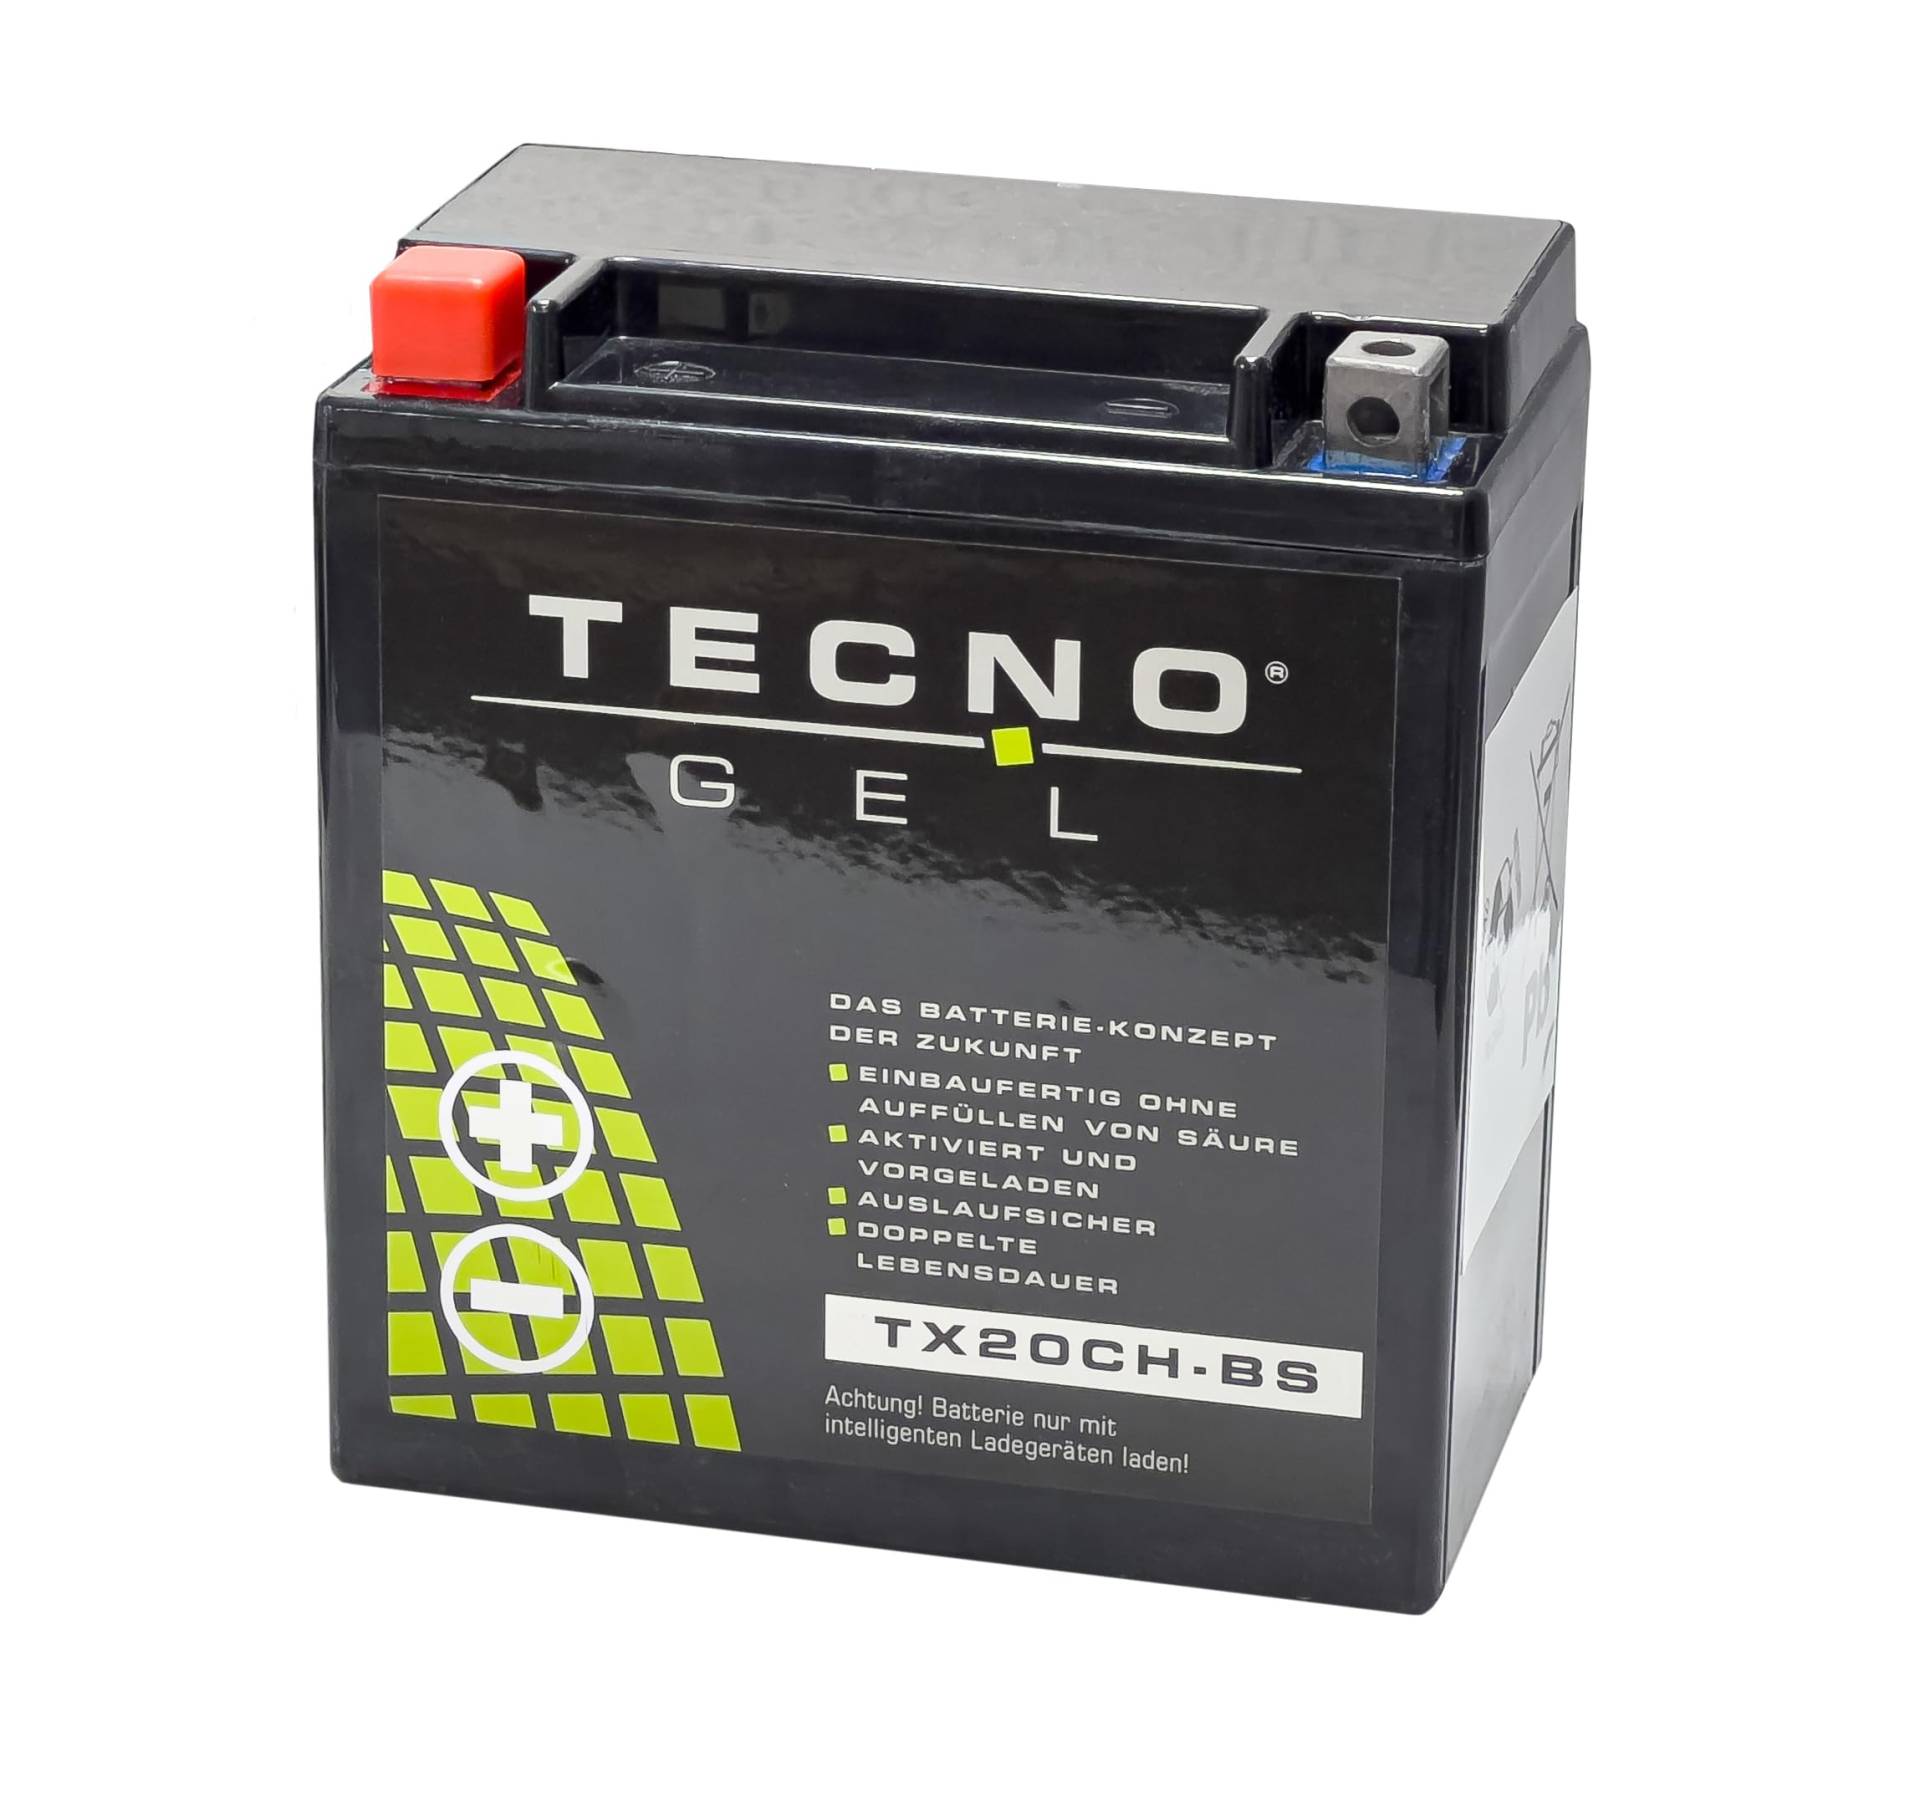 TECNO-GEL Motorrad-Batterie für YTX20CH-BS für Suzuki VL 1500 C1500 Intruder 12V Gel-Batterie 18 Ah, 150 x 87 x 161 mm von TECNO-GEL